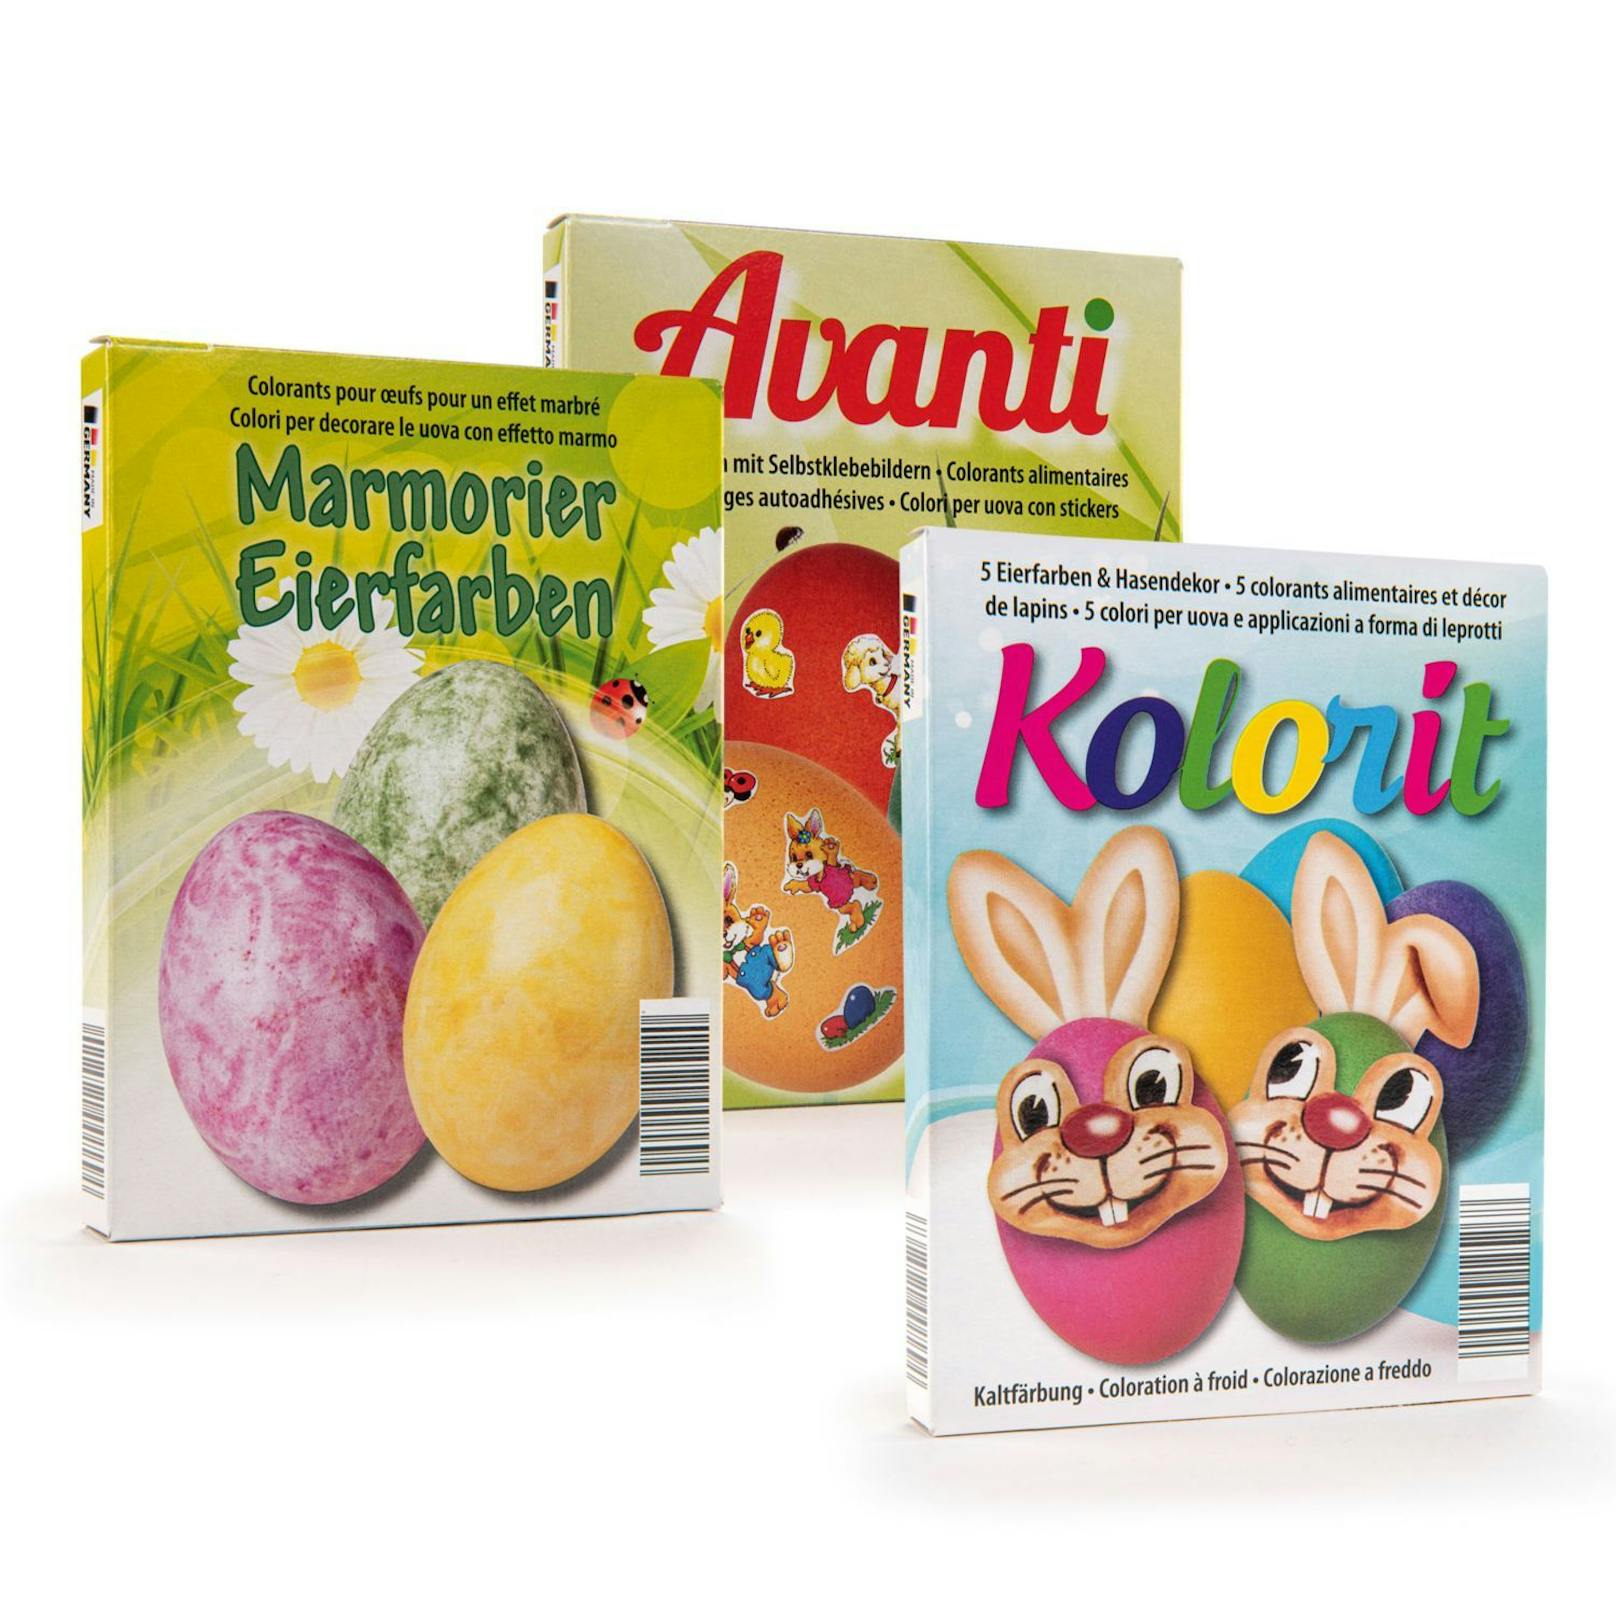 "Marmorier Eierfarben" und "Avanti3", ebenfalls von HOFER. ("Kolorit" bekam kein grünes Licht von Greenpeace.)